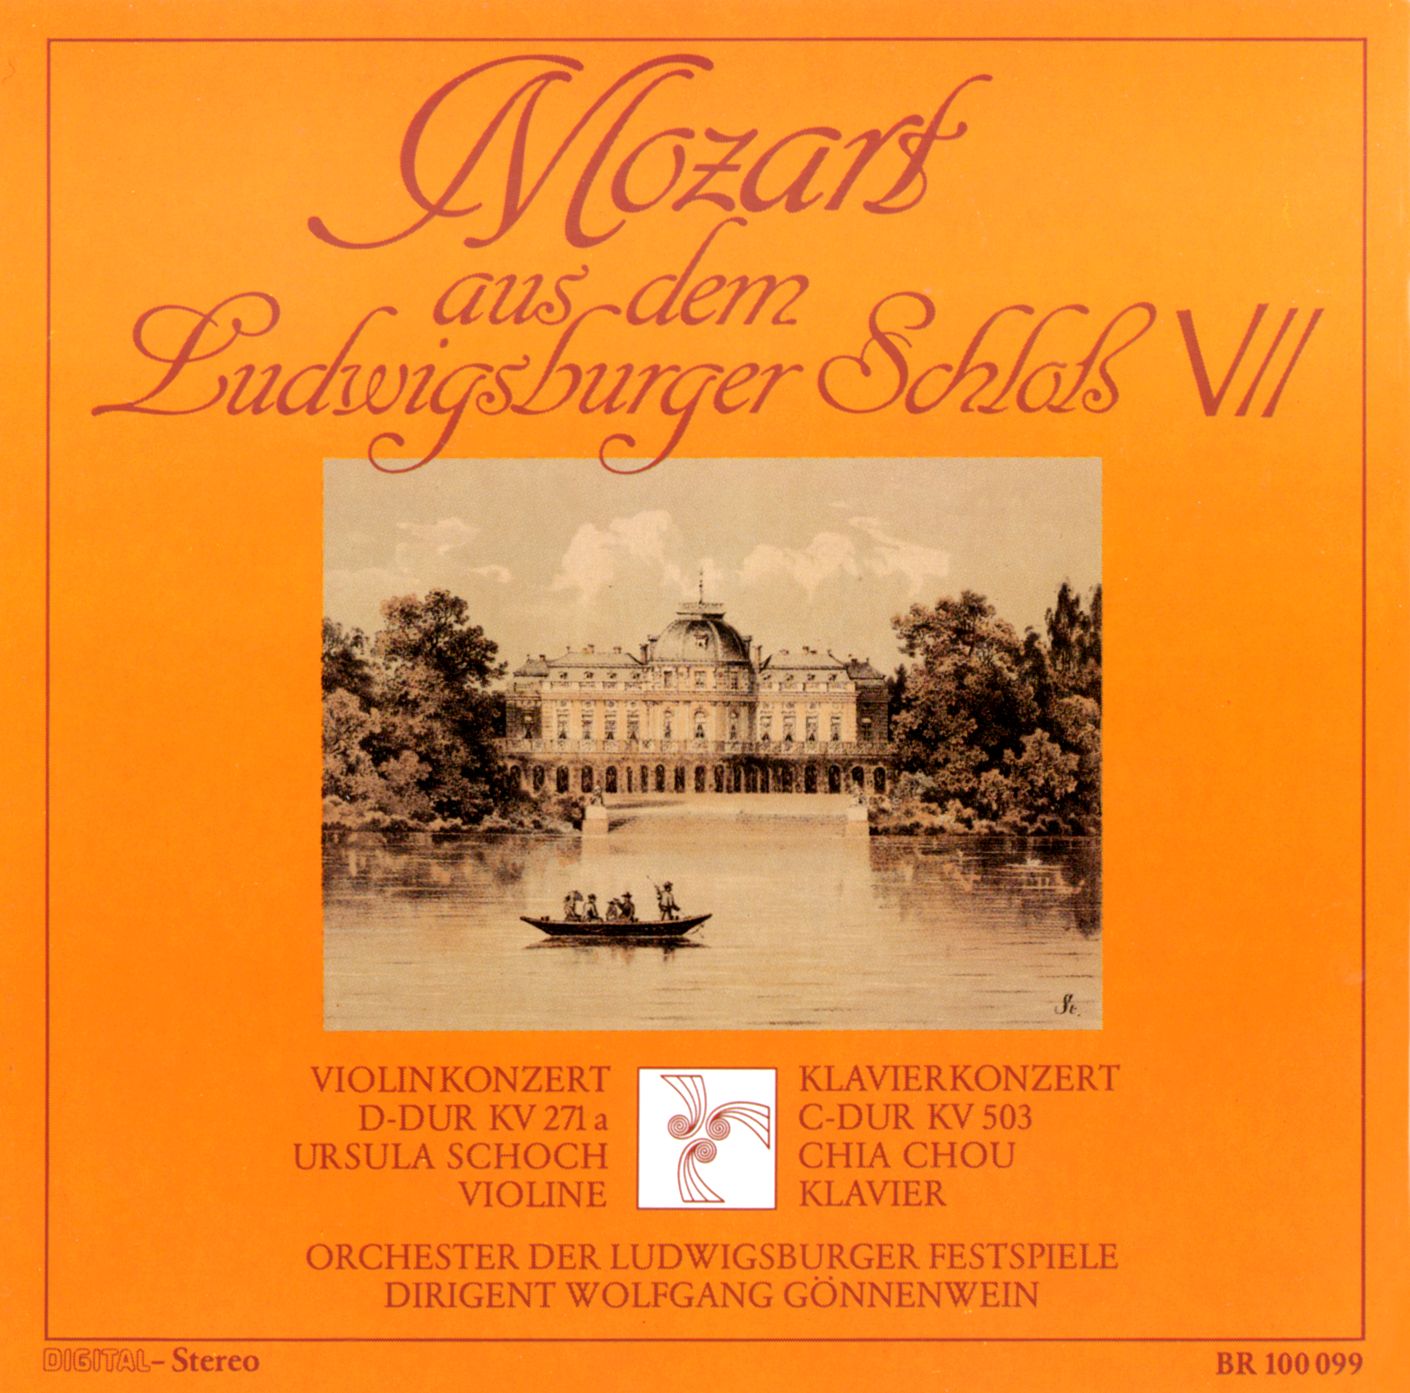 Mozart aus dem Ludwigsburger Schloß VII